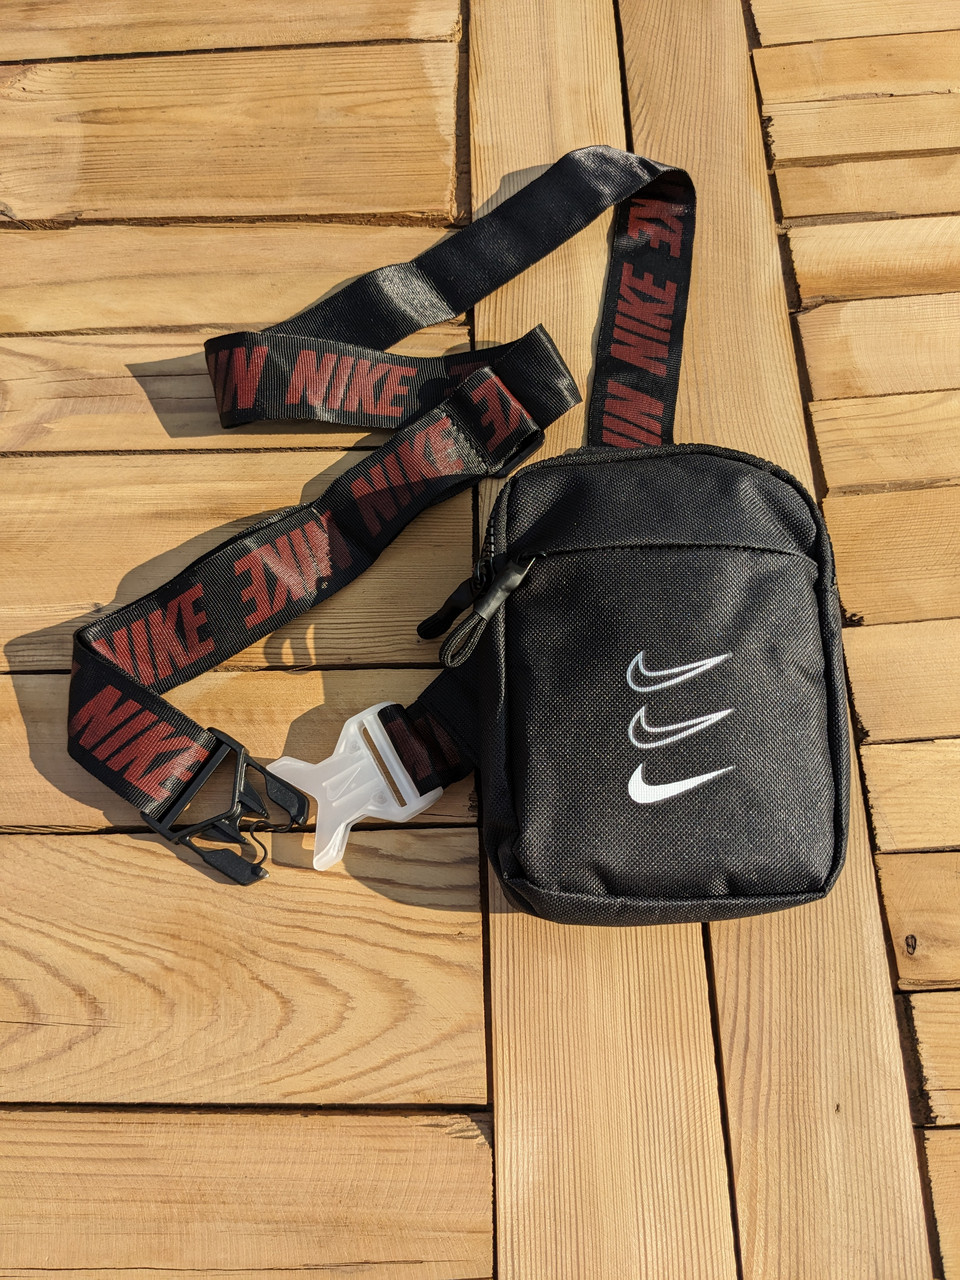 Сумка Nike, чорна, Big Swoosh, Месенджер, сумка через плече, барсетка Найк